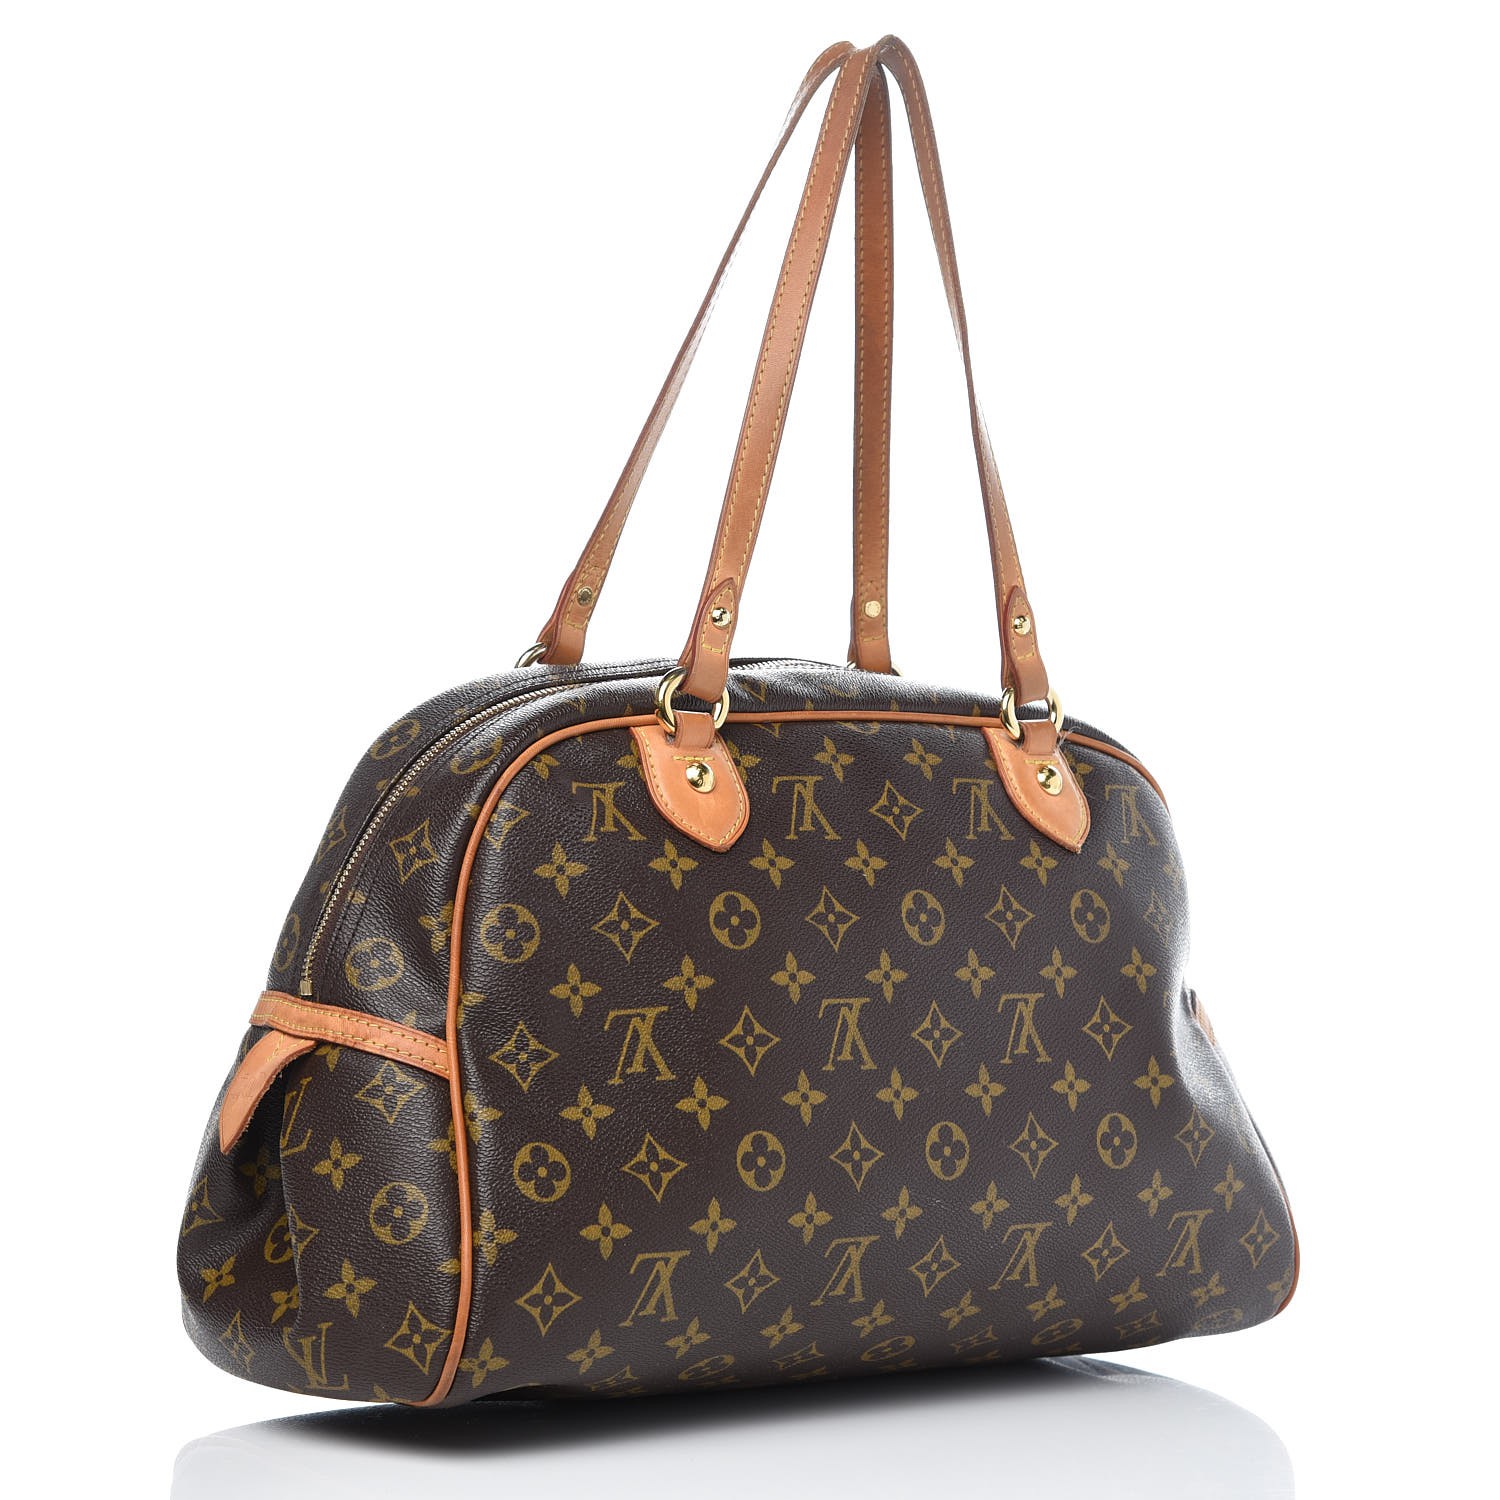 Louis Vuitton Montorgueil Brown Canvas Shoulder Bag (Pre-Owned)